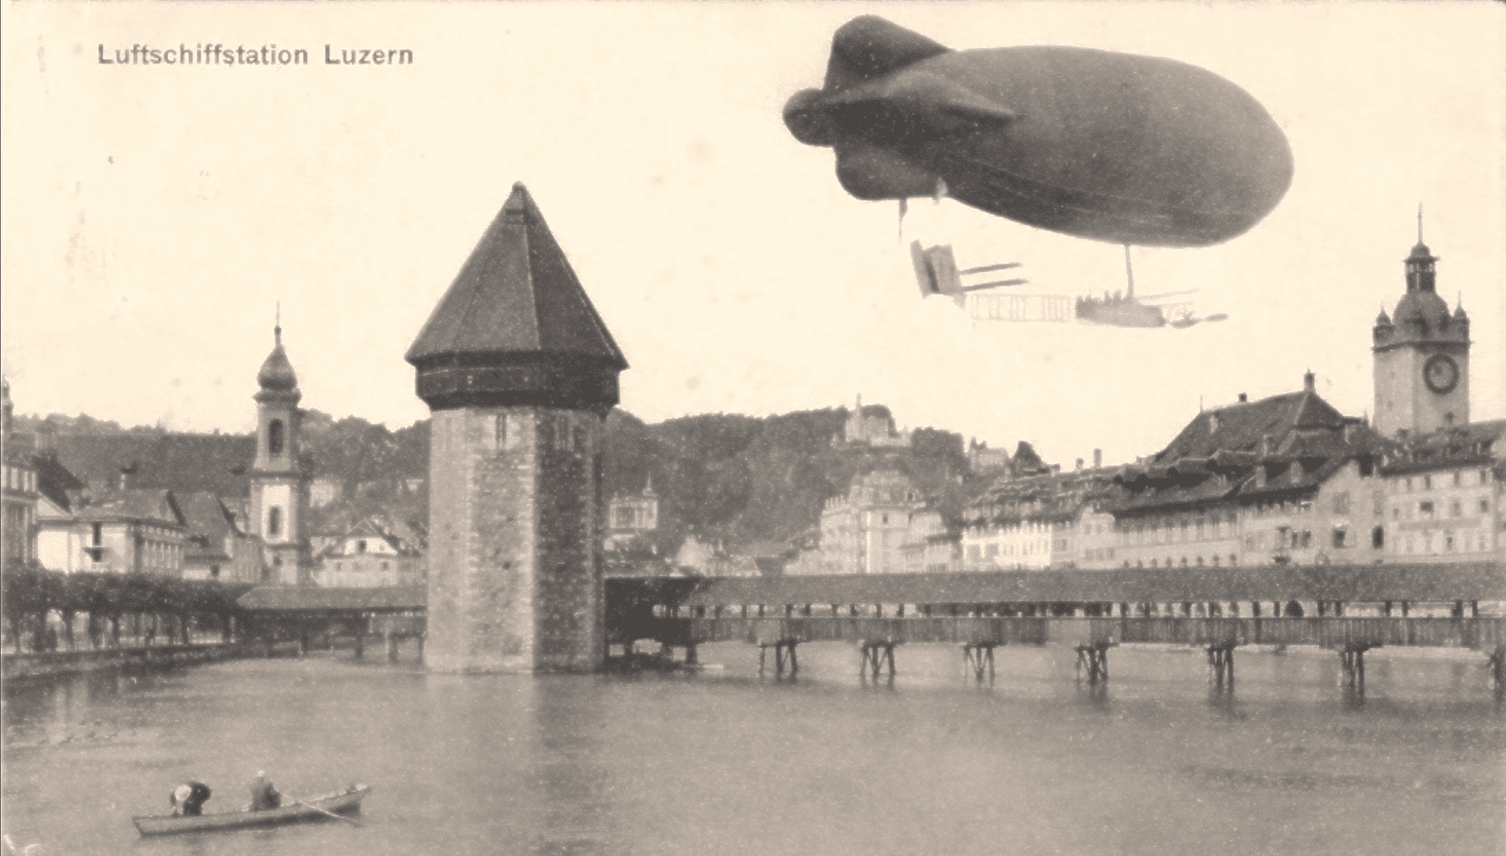 Als Luzern davon träumte, ein Luftschiffmekka zu werden